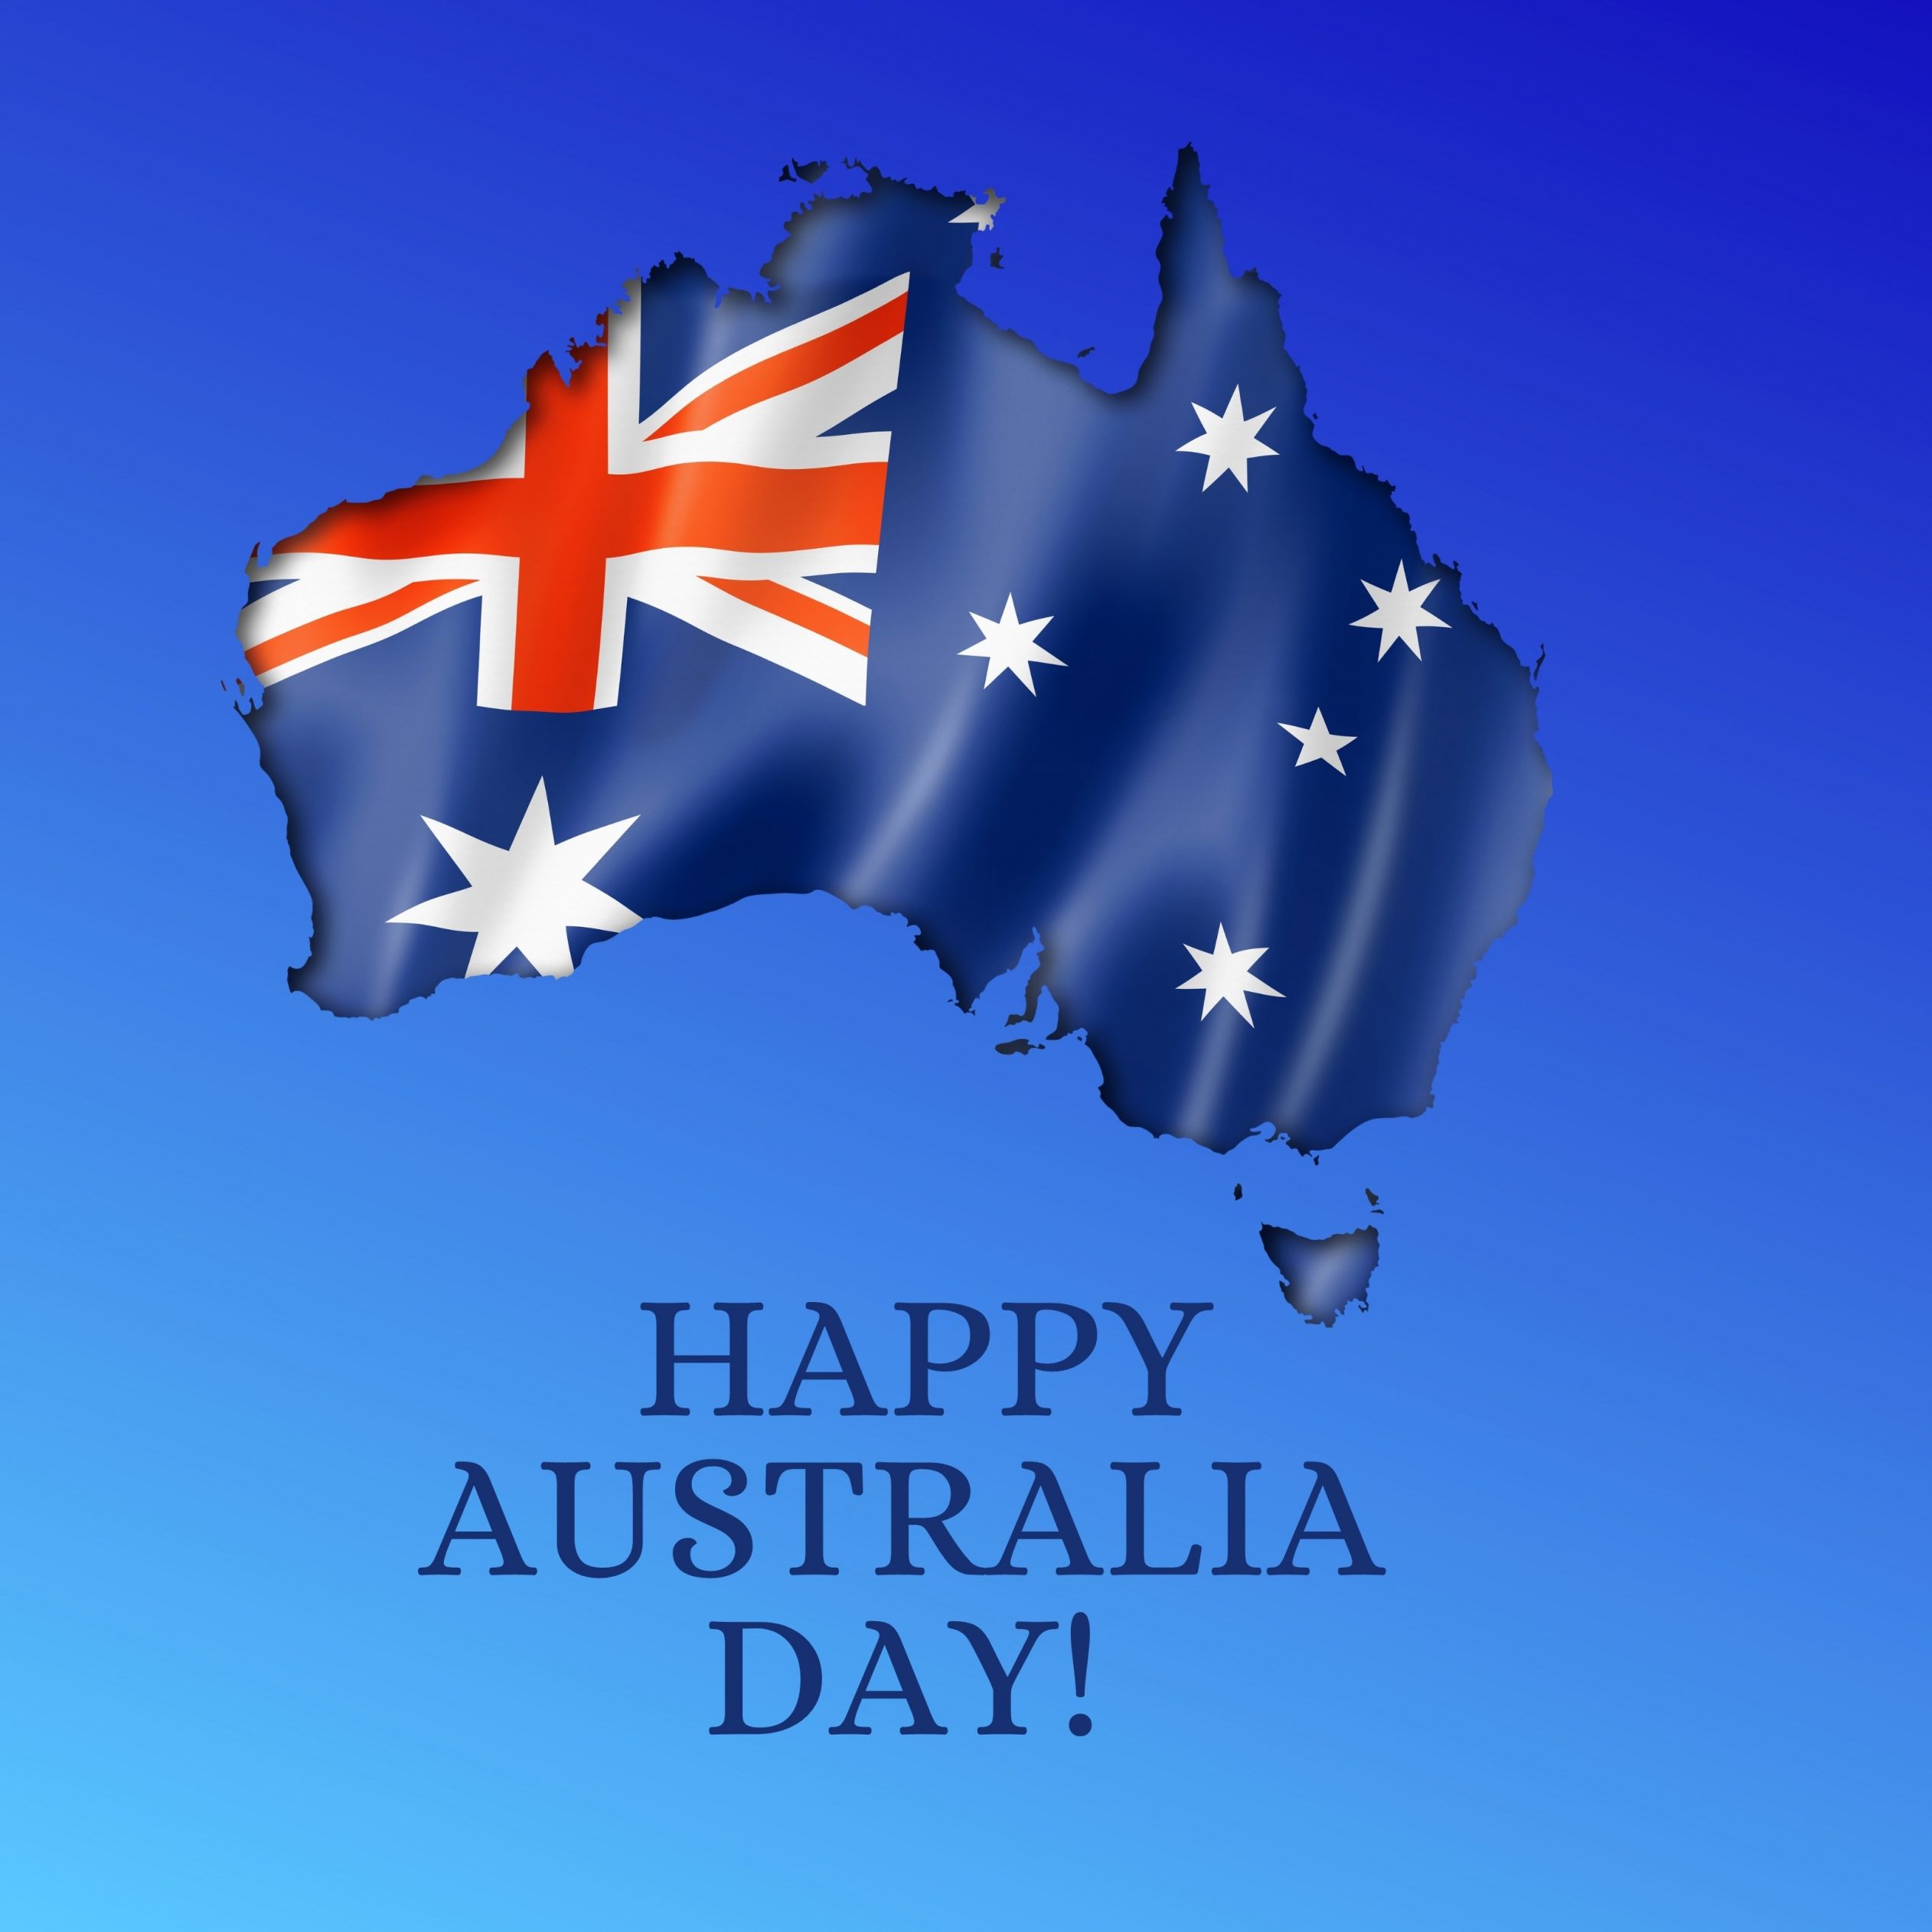 2524x2524 Parallax wallpaper 4k Happy Australia Day iPad Wallpaper 2524x2524 pixels resolution